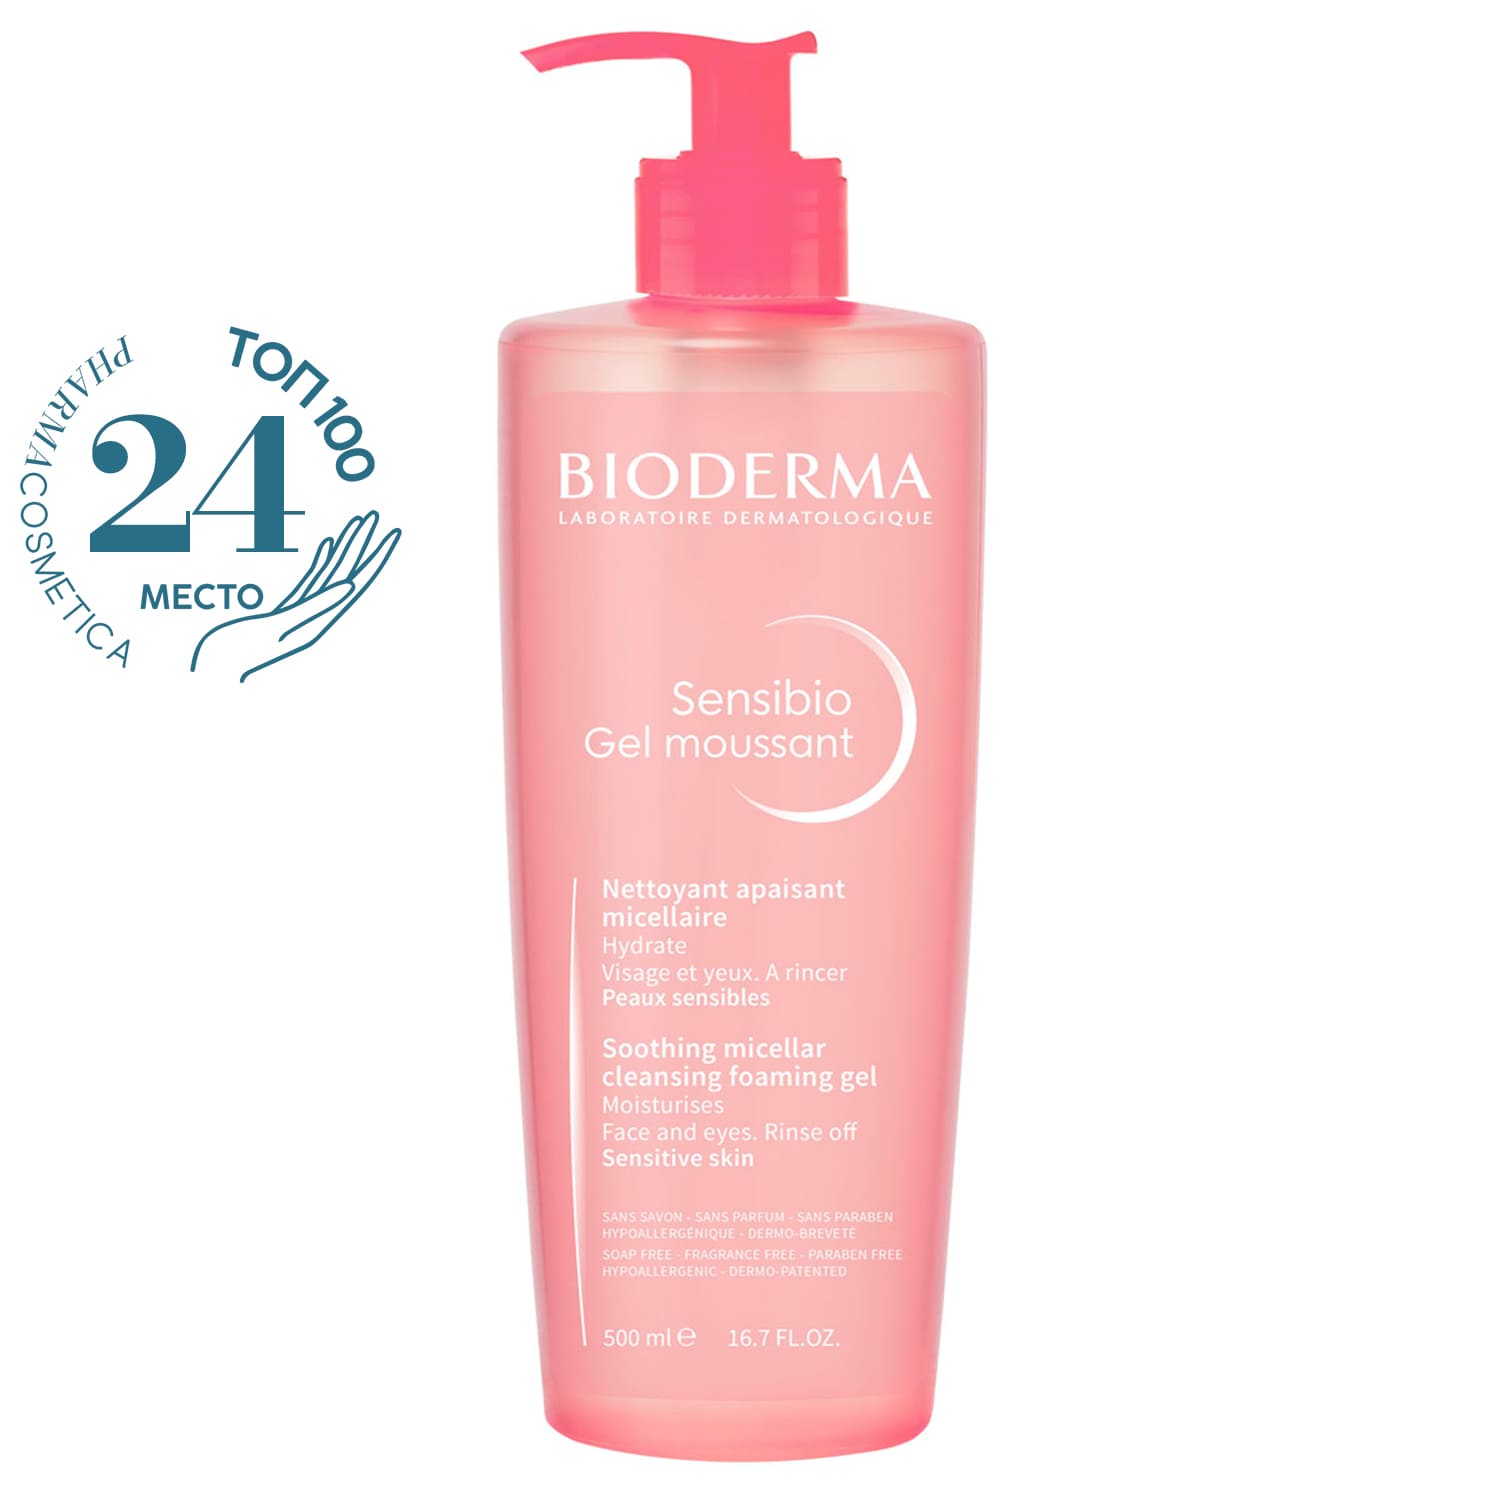 Bioderma Очищающий мицеллярный гель для чувствительной кожи, 500 мл (Bioderma, Sensibio) bioderma набор очищение и интенсивное увлажнение для чувствительной склонной к покраснениям и раздражениям кожи bioderma sensibio